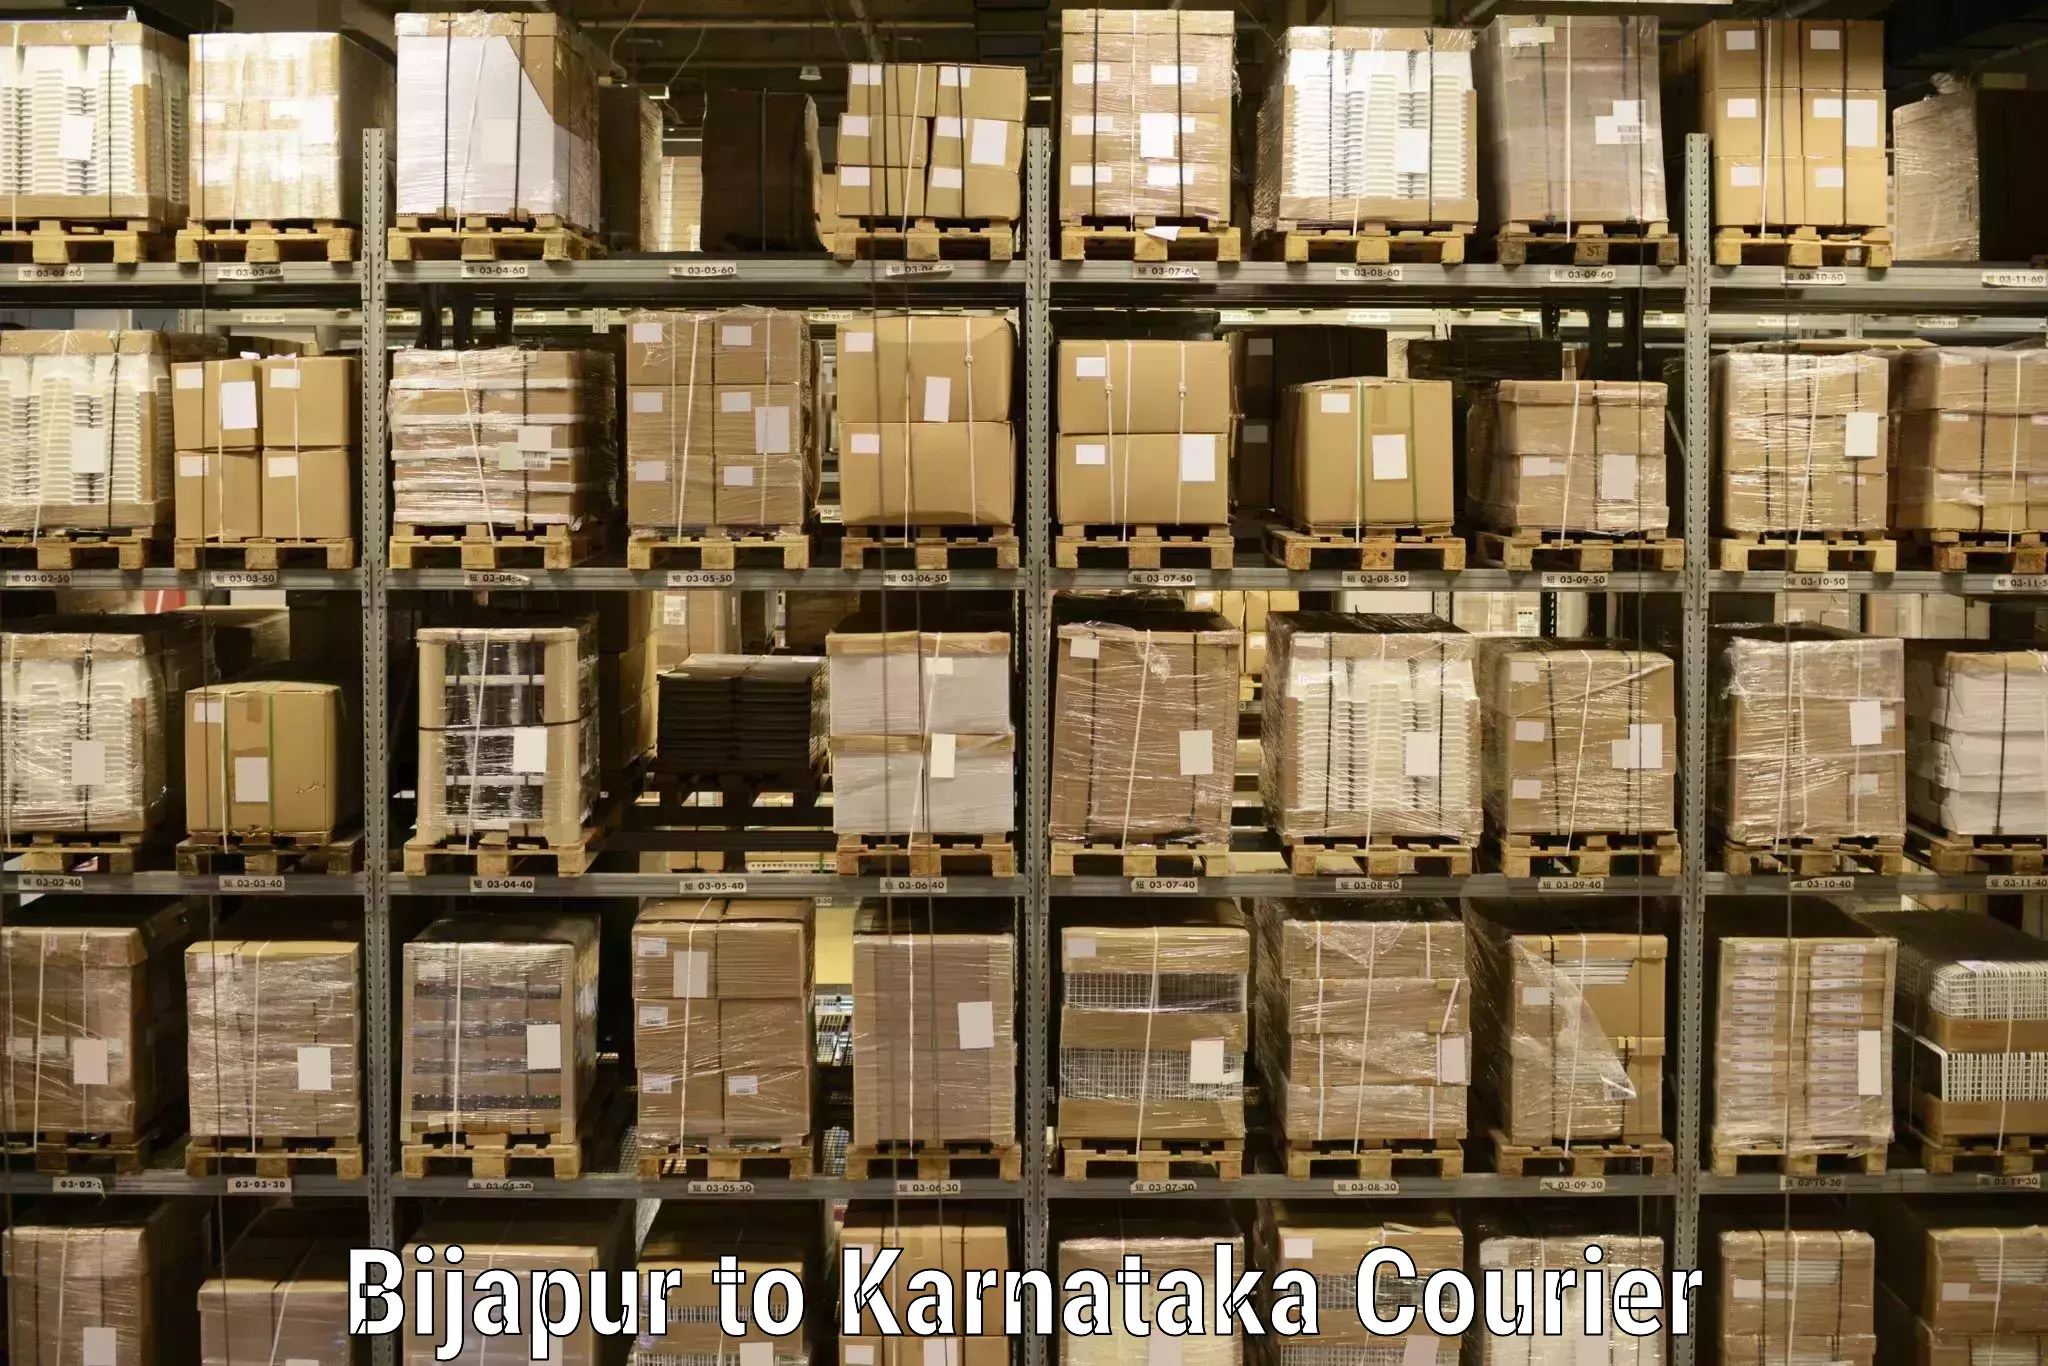 Speedy delivery service Bijapur to Uttara Kannada